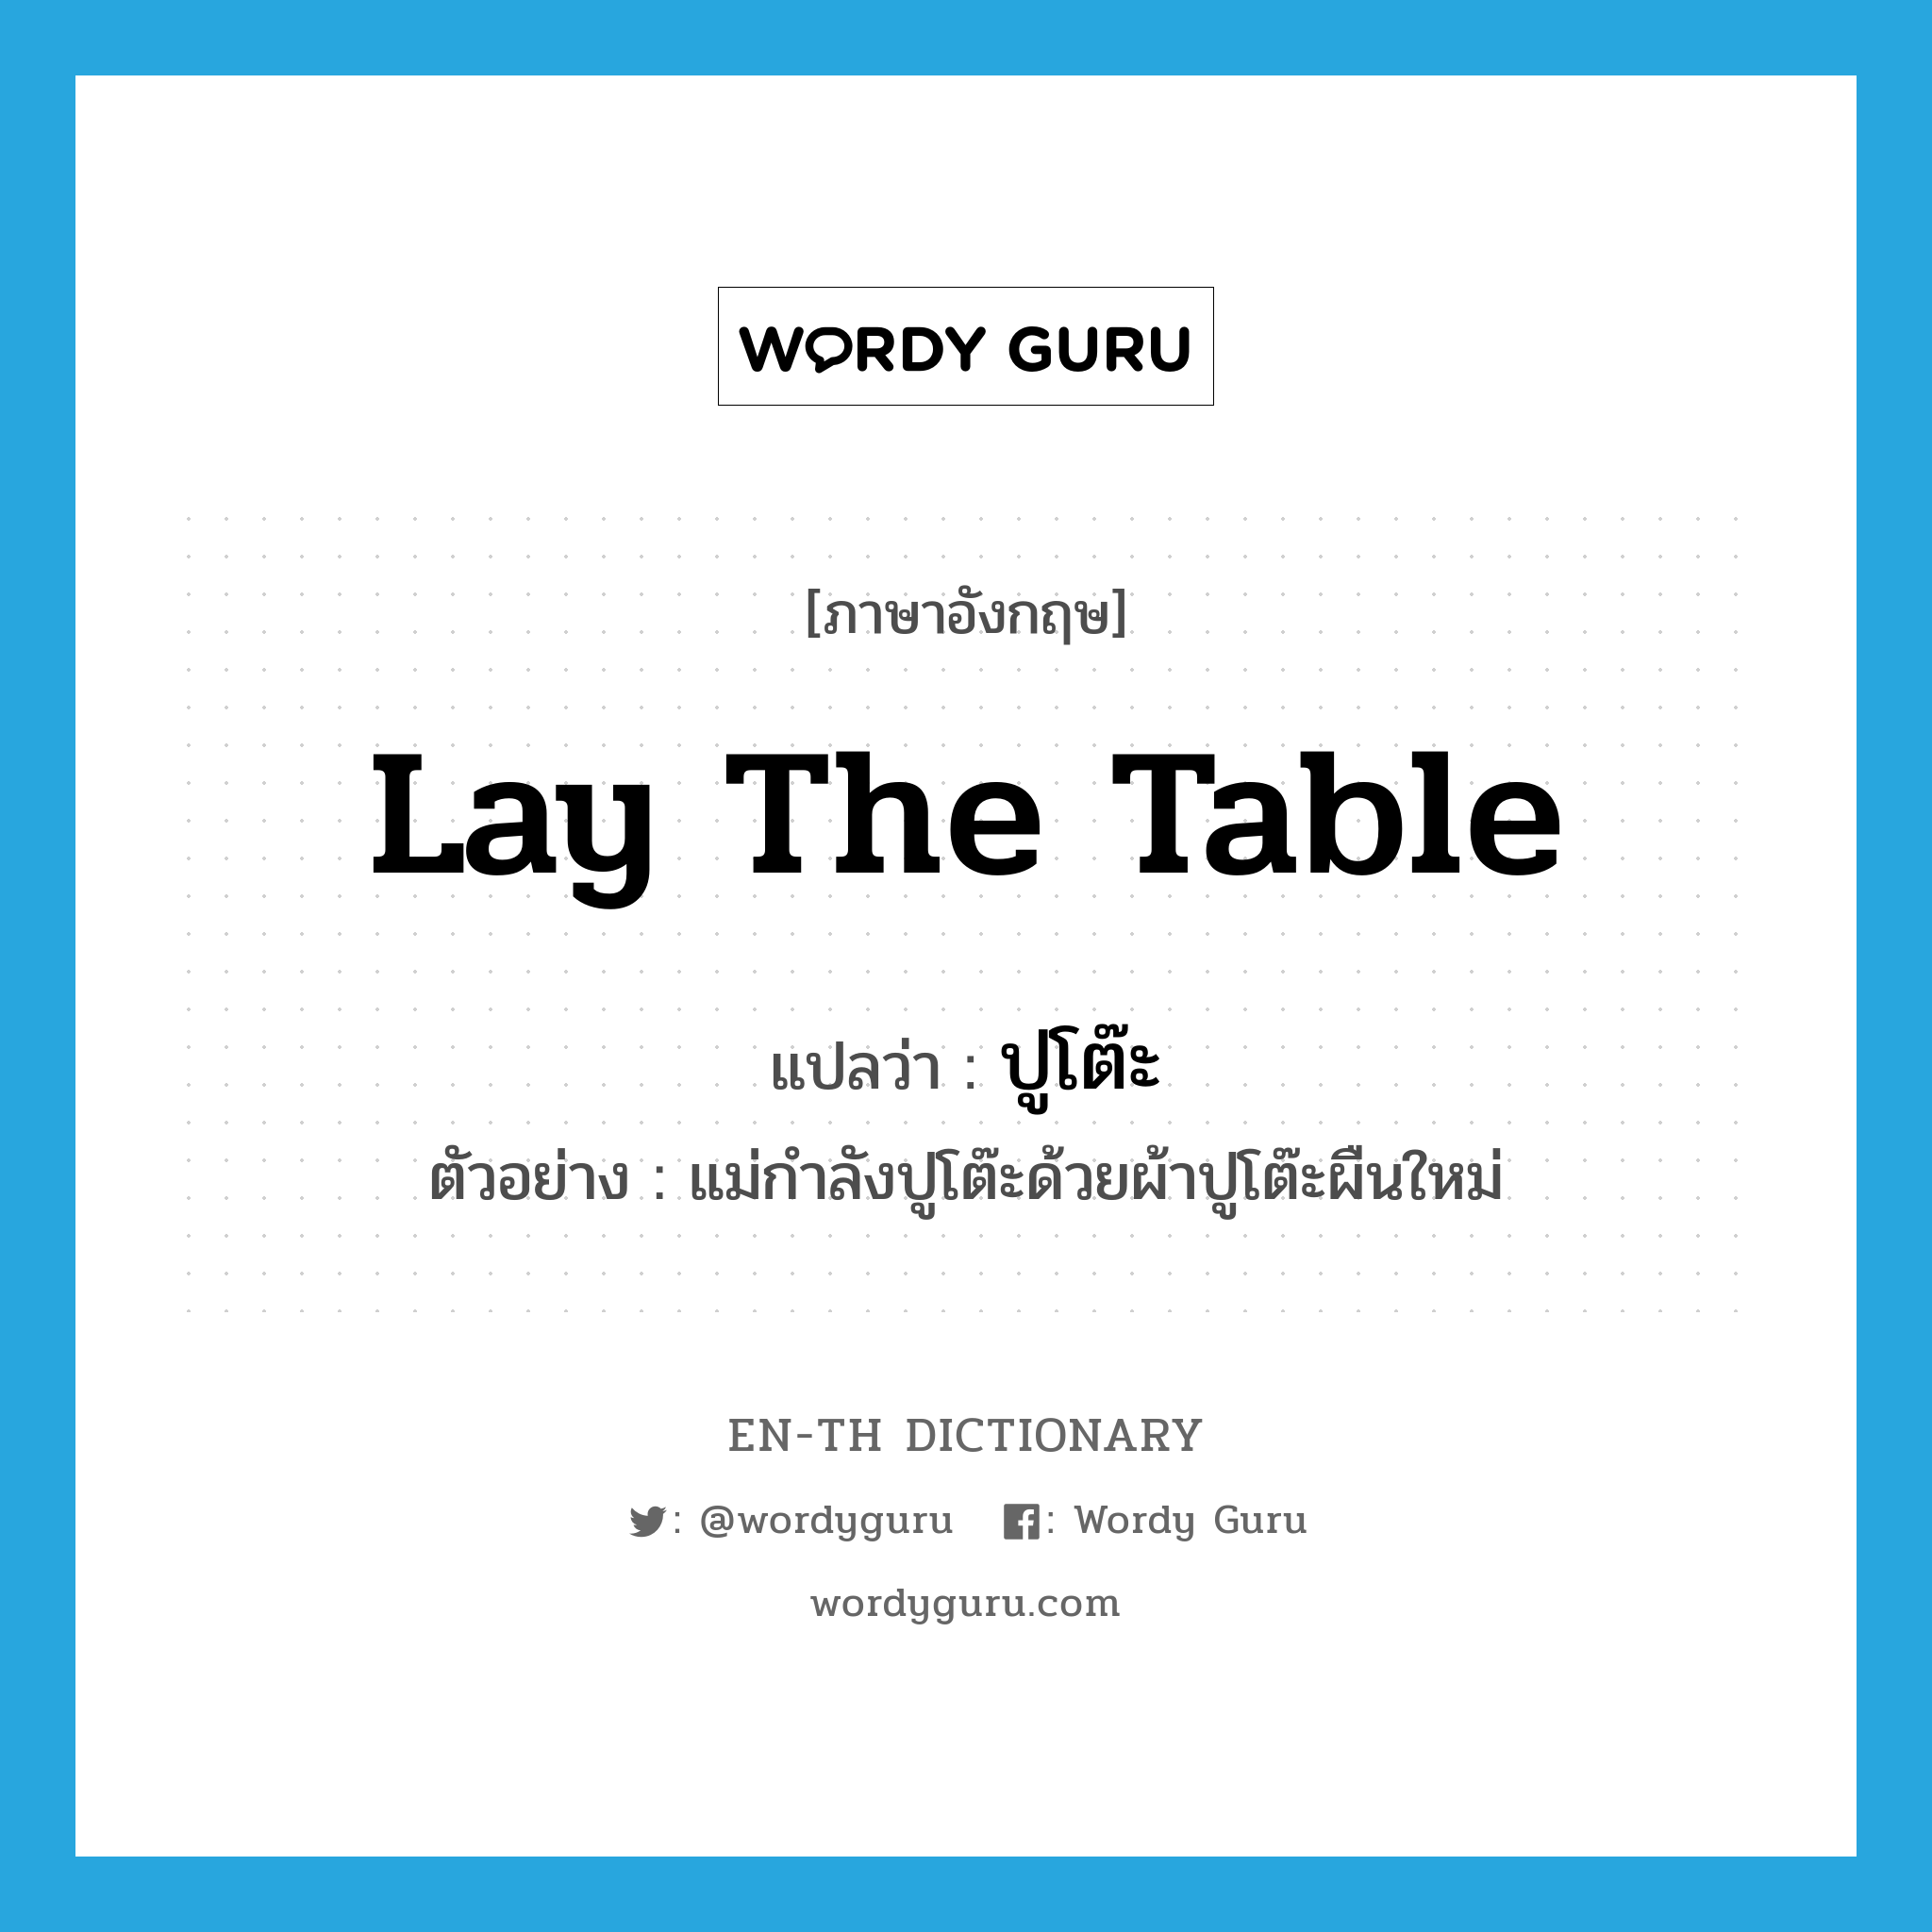 lay the table แปลว่า?, คำศัพท์ภาษาอังกฤษ lay the table แปลว่า ปูโต๊ะ ประเภท V ตัวอย่าง แม่กำลังปูโต๊ะด้วยผ้าปูโต๊ะผืนใหม่ หมวด V